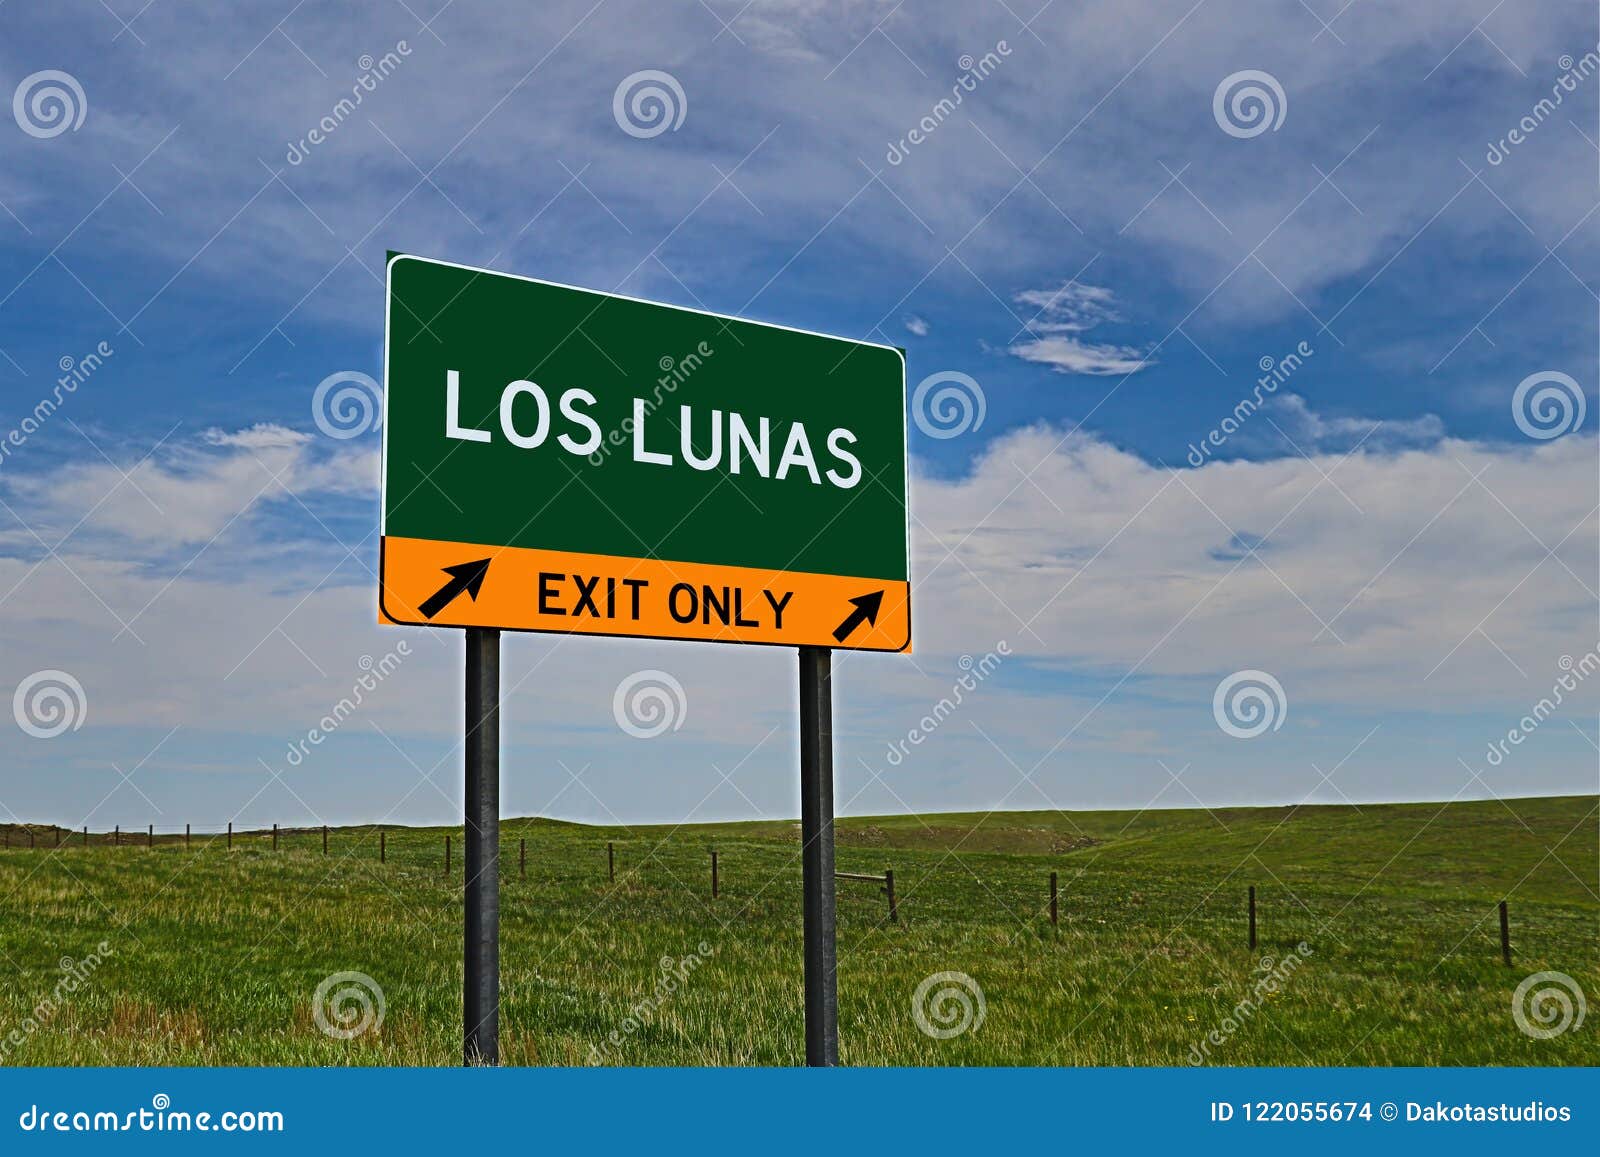 us highway exit sign for los lunas